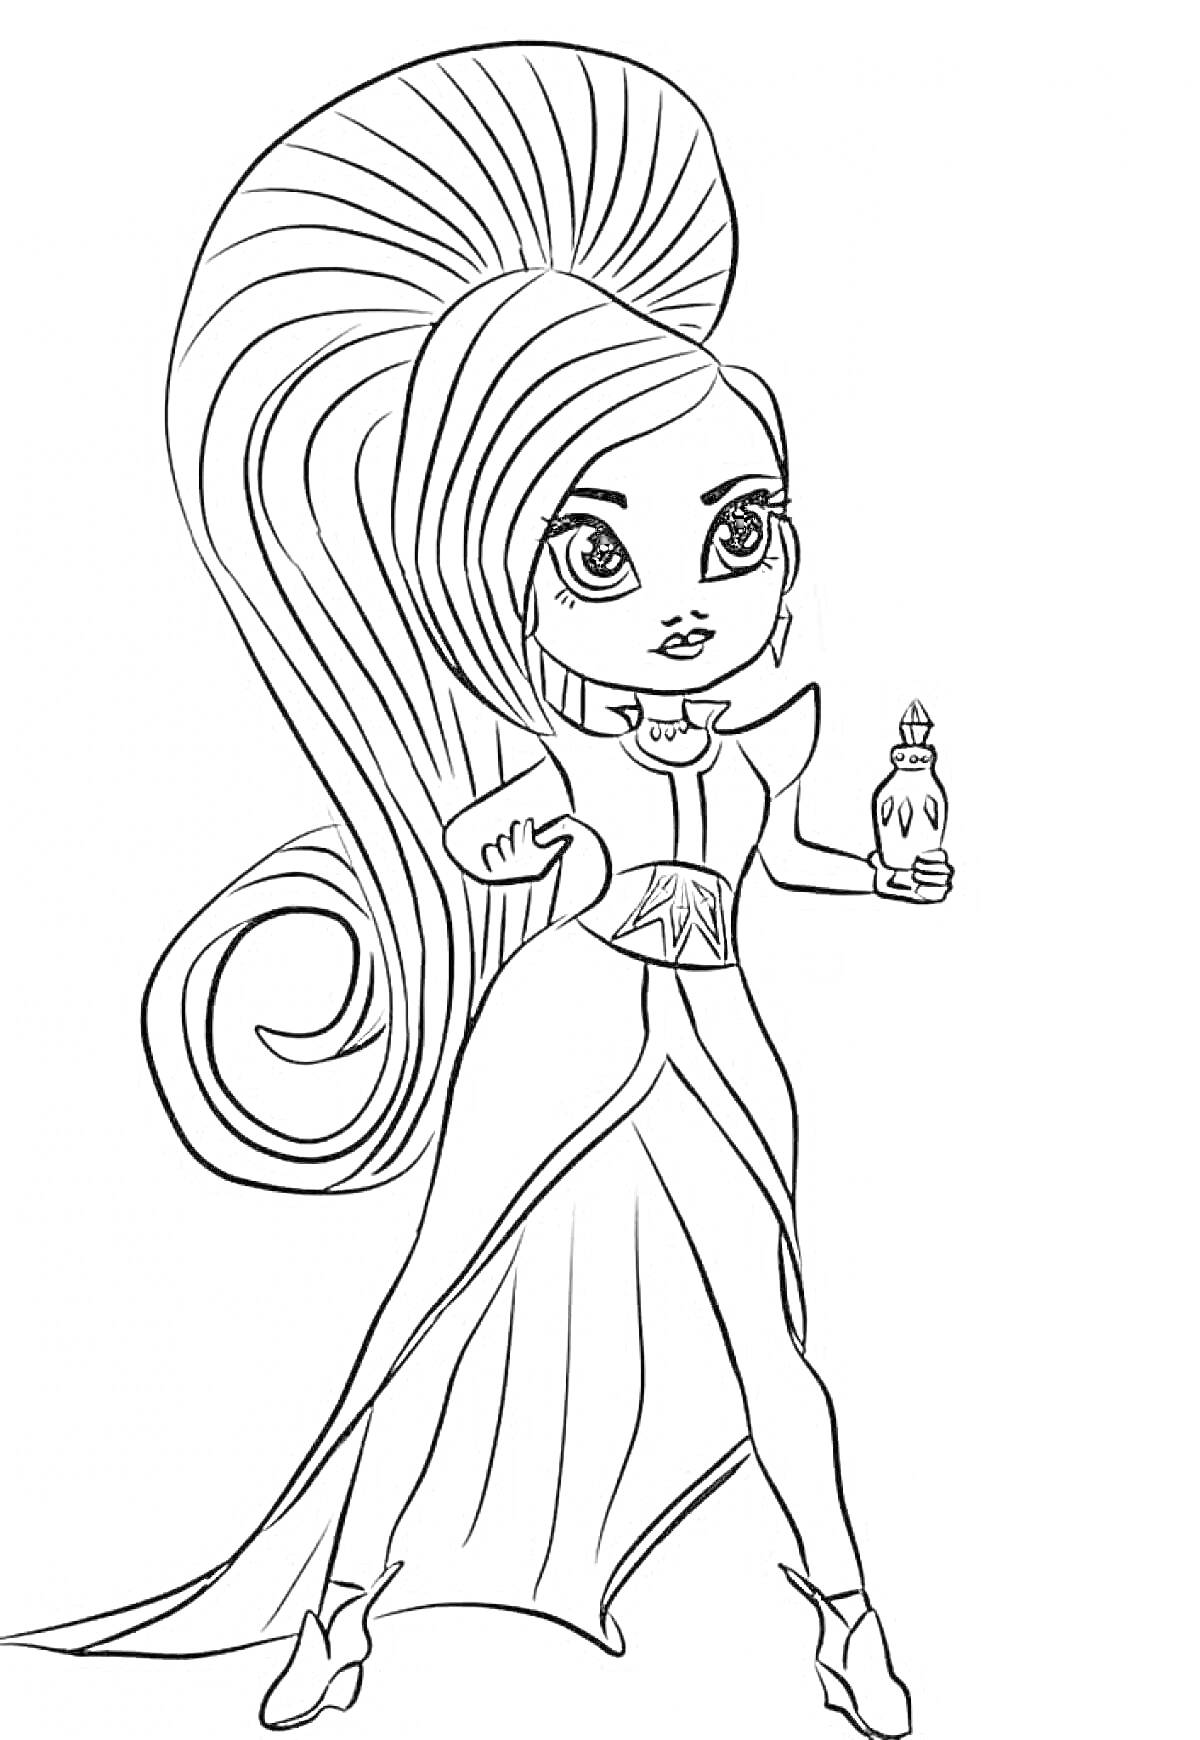 Девочка с длинными волосами, в платье, с бутылочкой в руке.